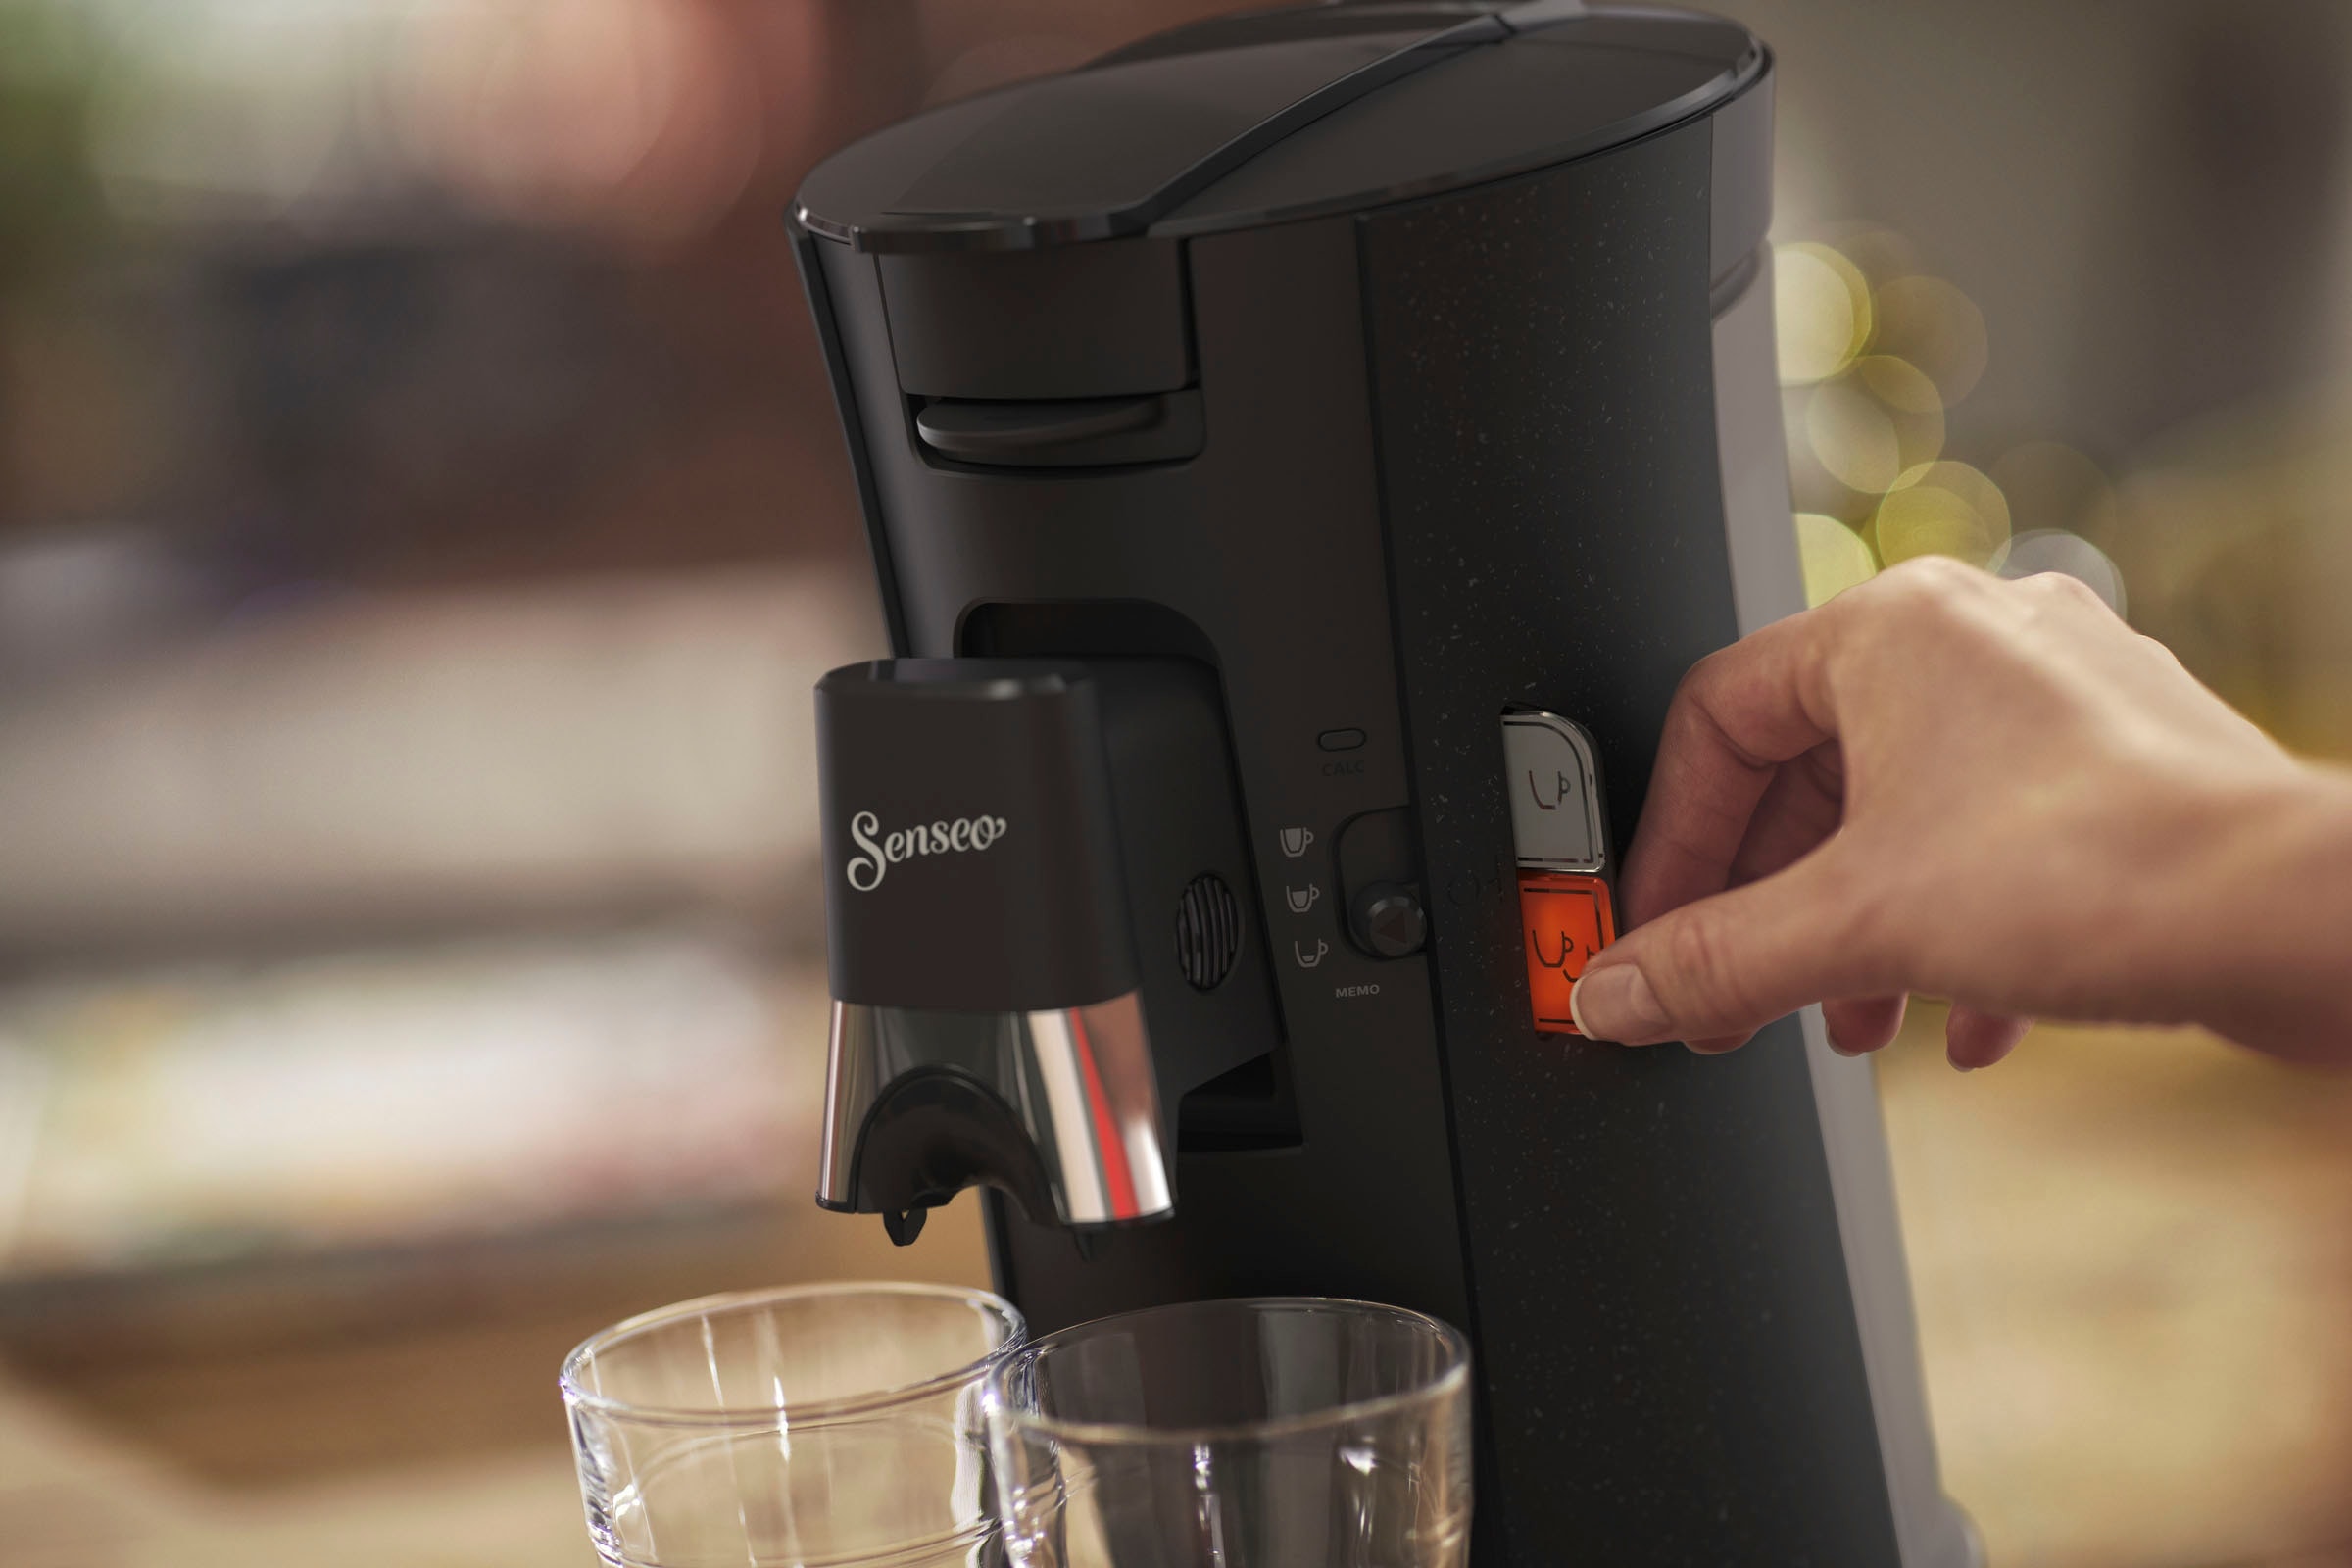 Philips Senseo Kaffeepadmaschine »Select ECO CSA240/20«, inkl. Gratis- Zugaben im Wert von € 14 - UVP, schwarz | BAUR